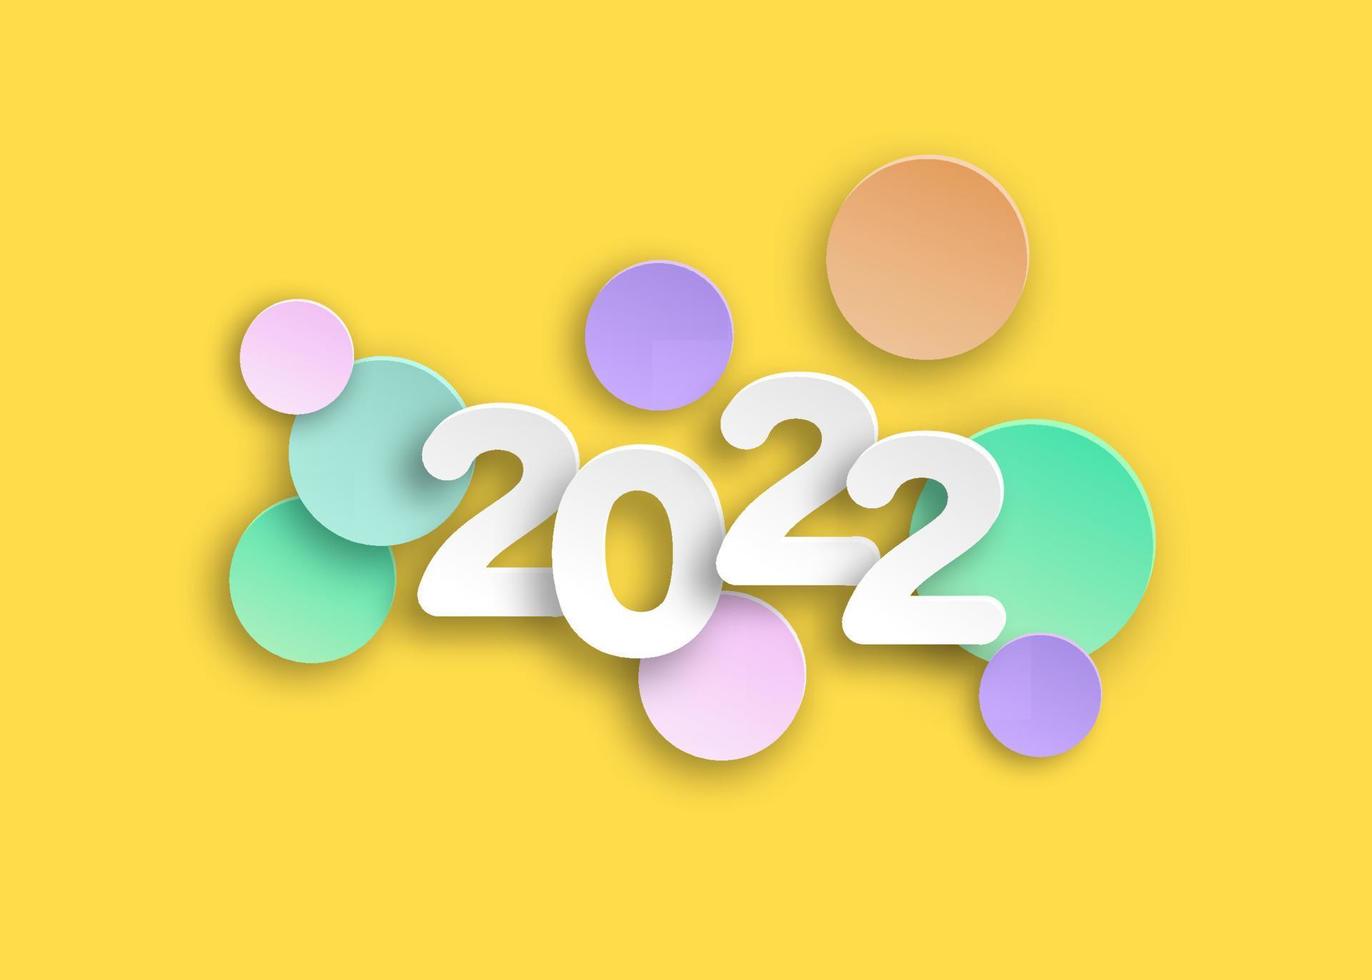 neues Jahr 2022 Scherenschnittzahlen in zarten Farben. dekorative grußkarte 2022 frohes neues jahr. bunte Weihnachtsfahne, Vektorillustration lokalisiert auf gelbem Hintergrund vektor